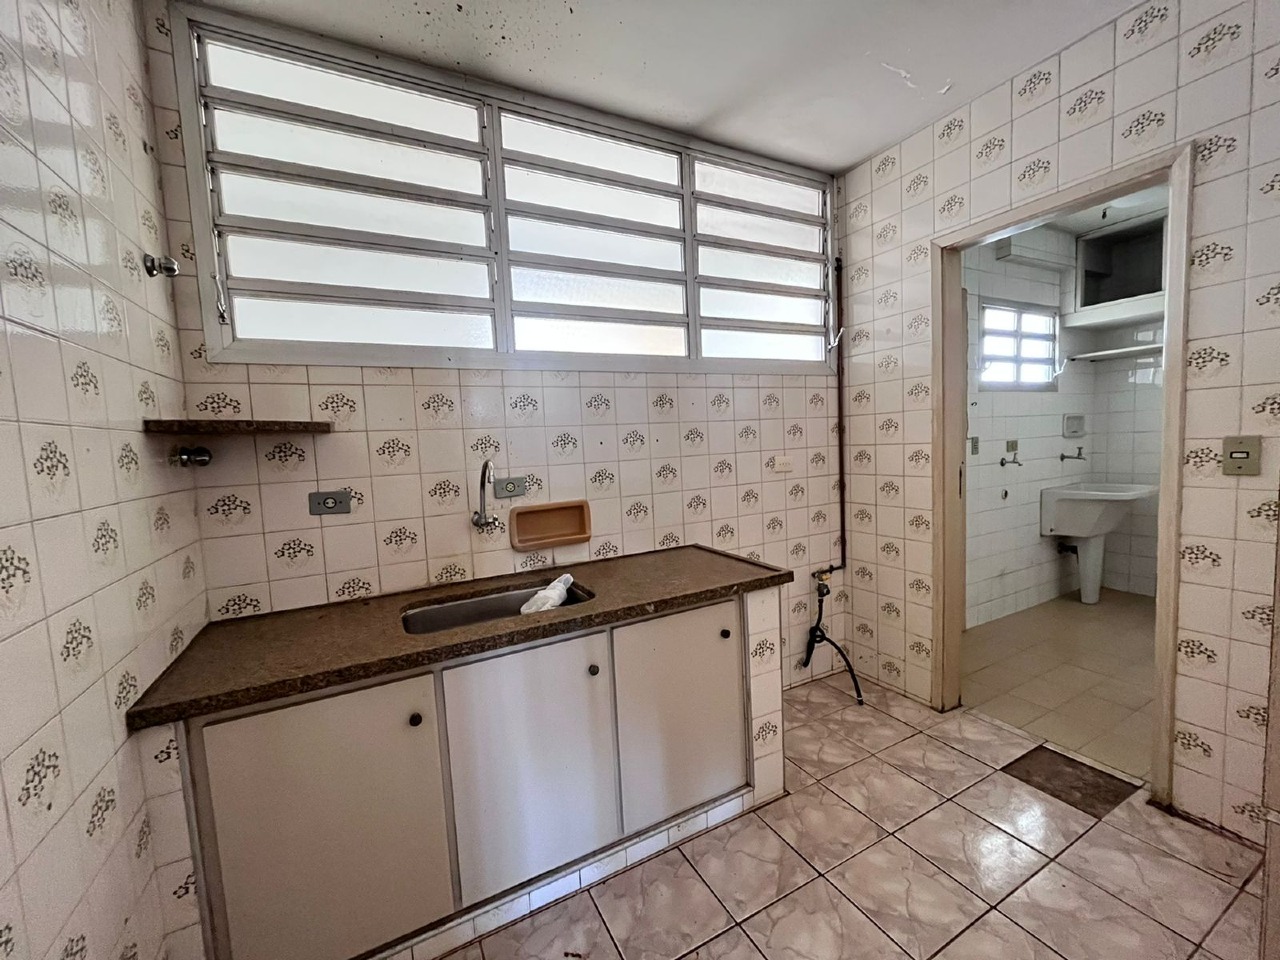 Apartamento à venda, 3 quartos, 1 suíte, no bairro Centro em Piracicaba - SP